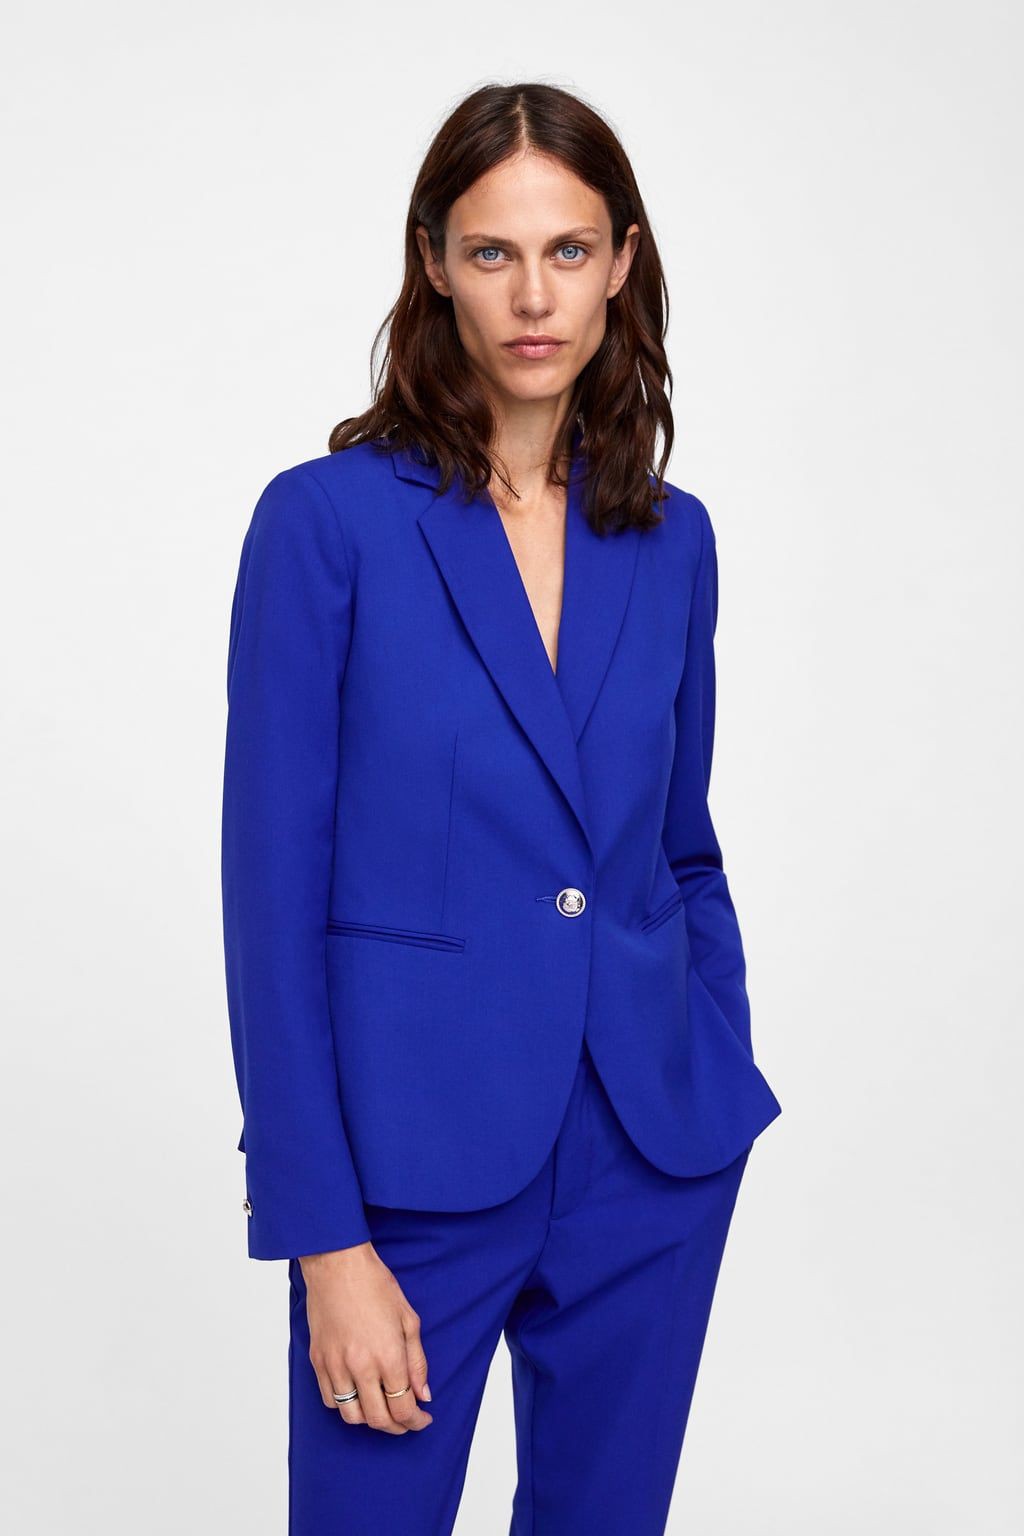 Traje de trabajo bonprix azul cobalto adicto a la moda: azul real,  Azul cobalto,  traje de chaqueta,  Chaqueta de traje,  Atuendos Informales  